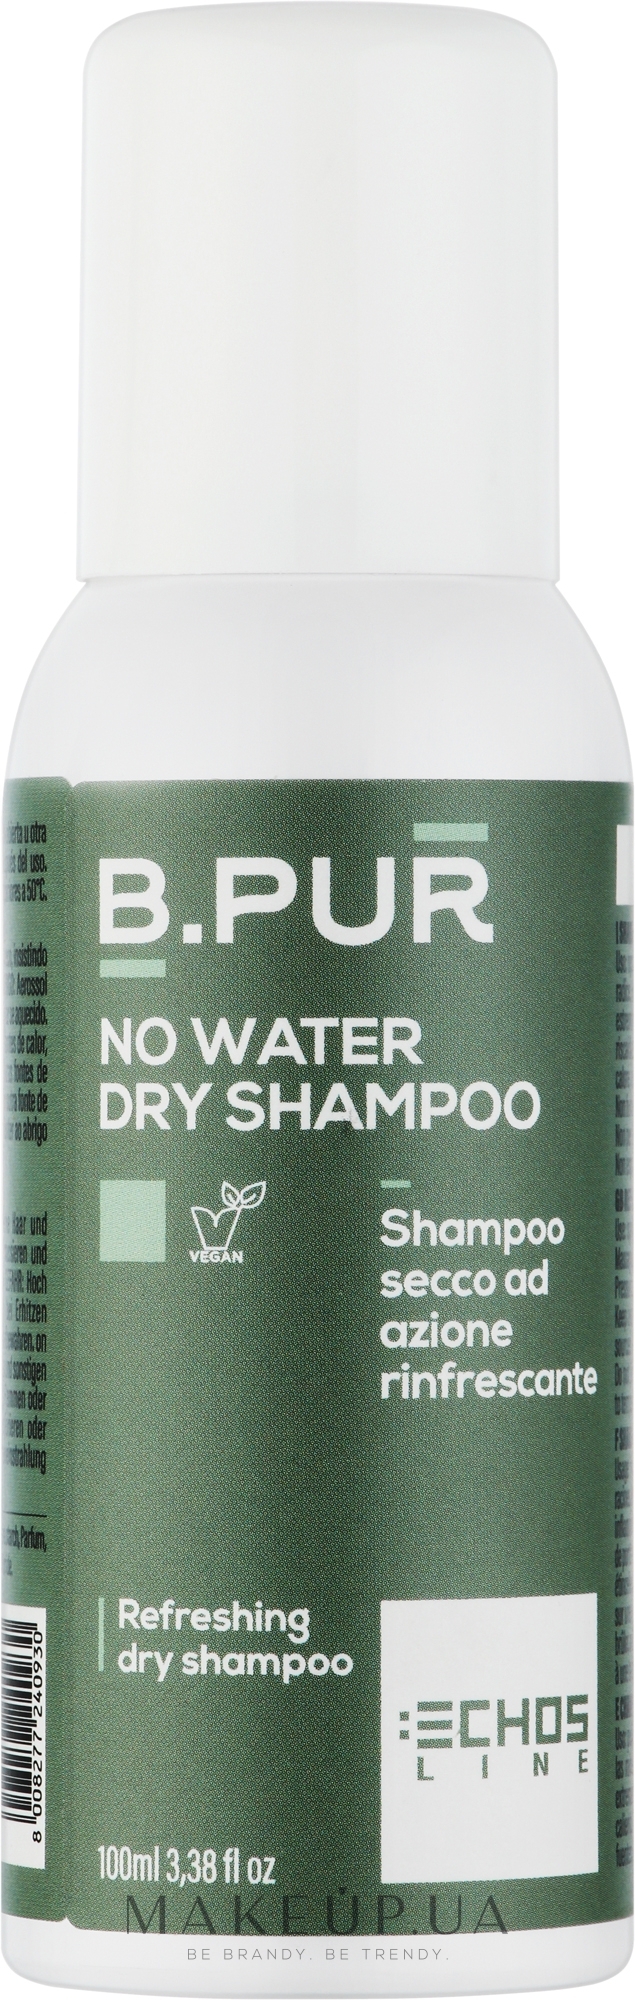 Шампунь сухой для волос с растительным углем - Echosline B.Pur Dry Shampoo with Refreshing Action — фото 100ml